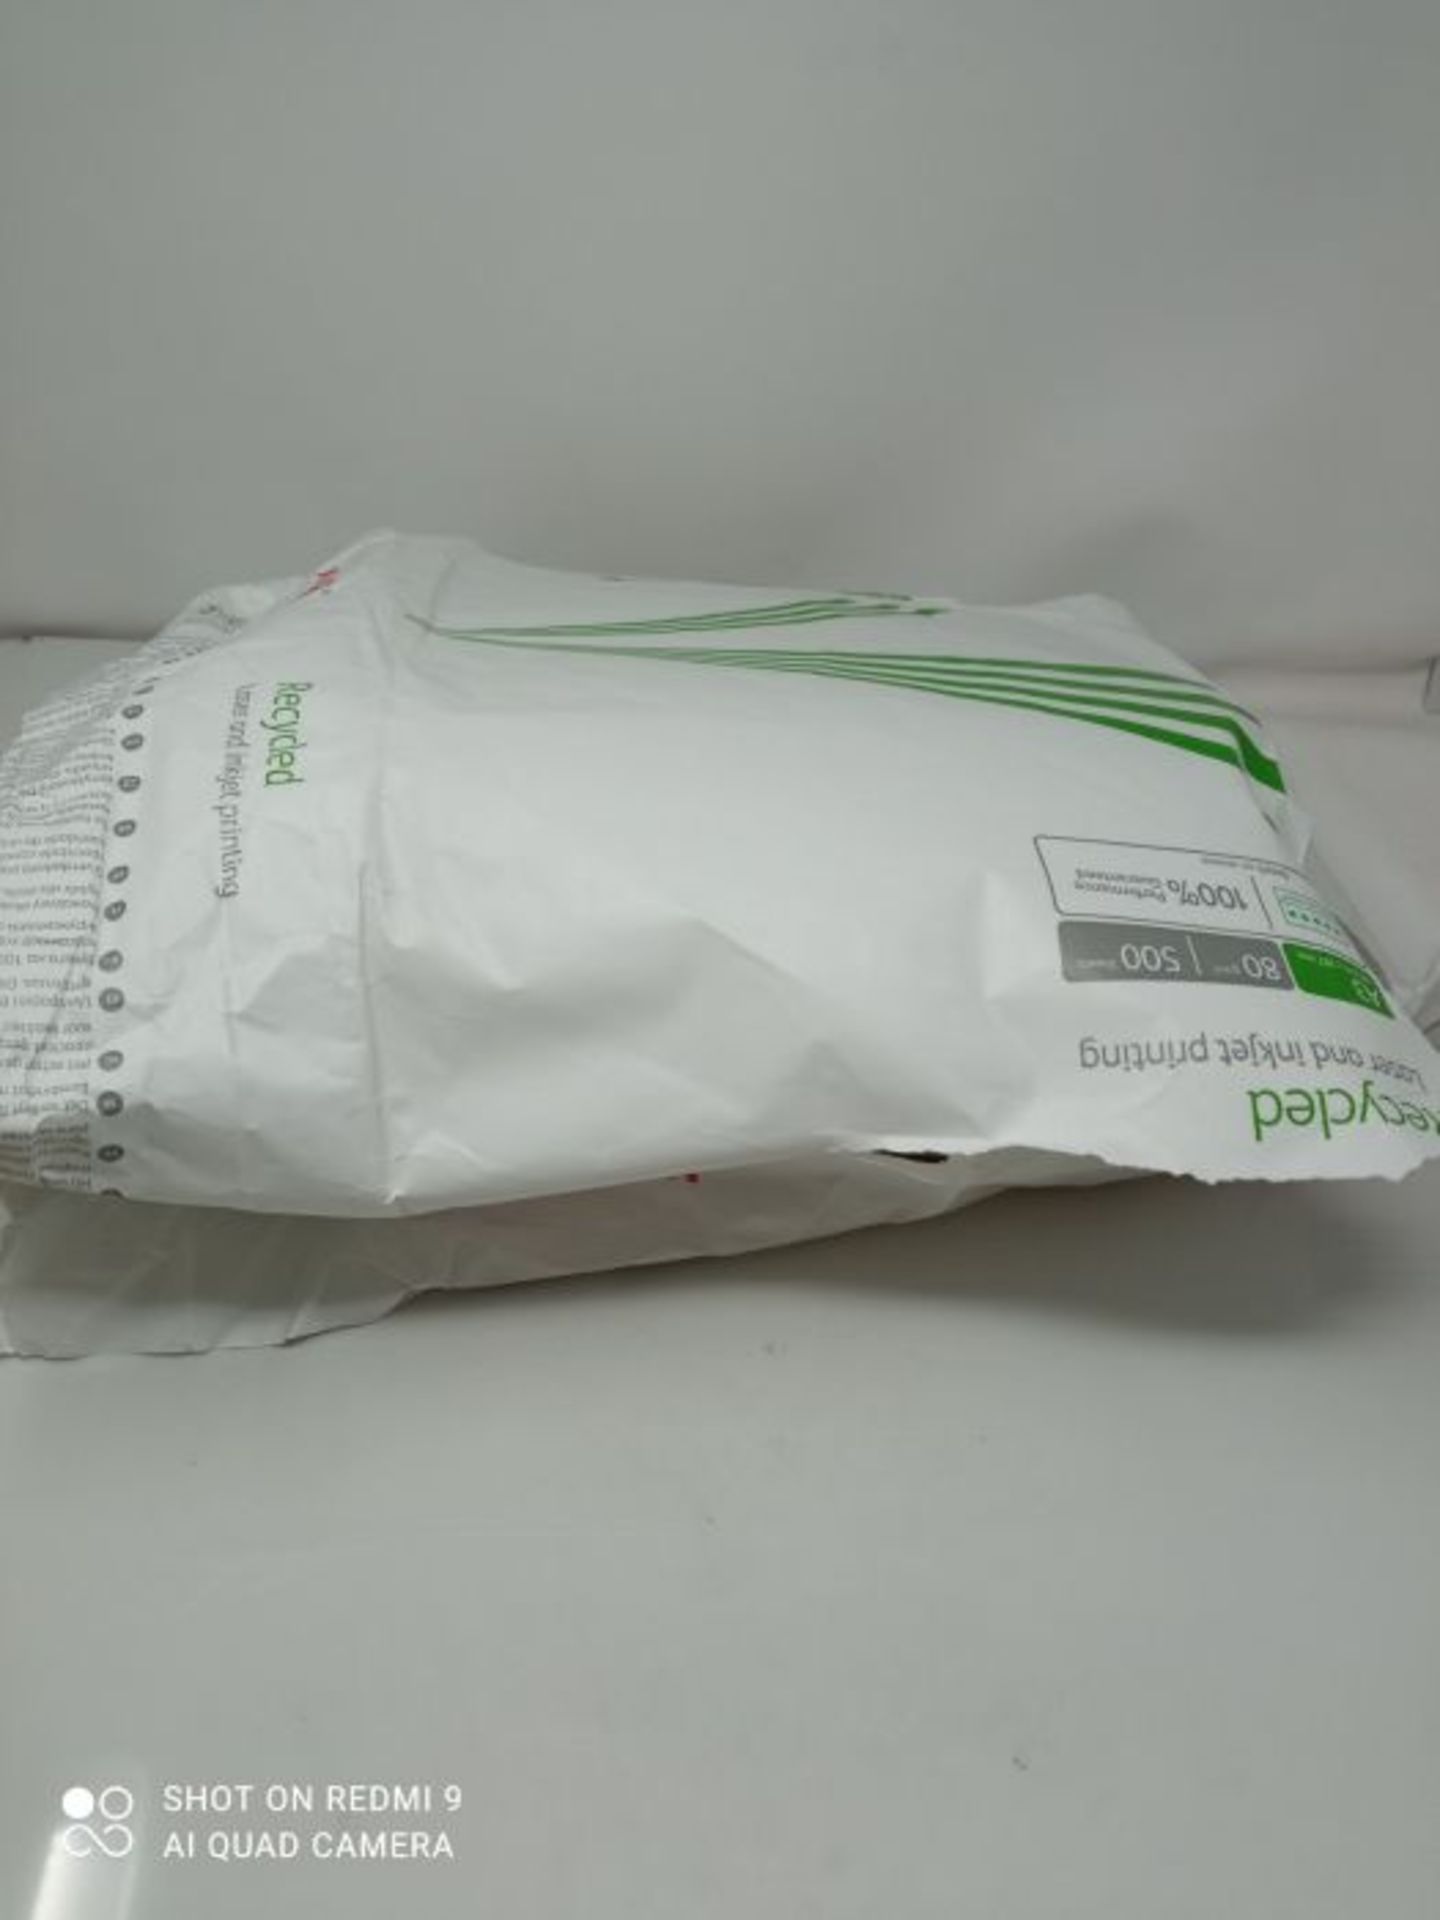 RRP £68.00 Xerox Recycled - Papier recyclÃ© Blanc 80 g/mÂ² A3 - Carton de 5 x 500 feuilles 00 - Image 2 of 2